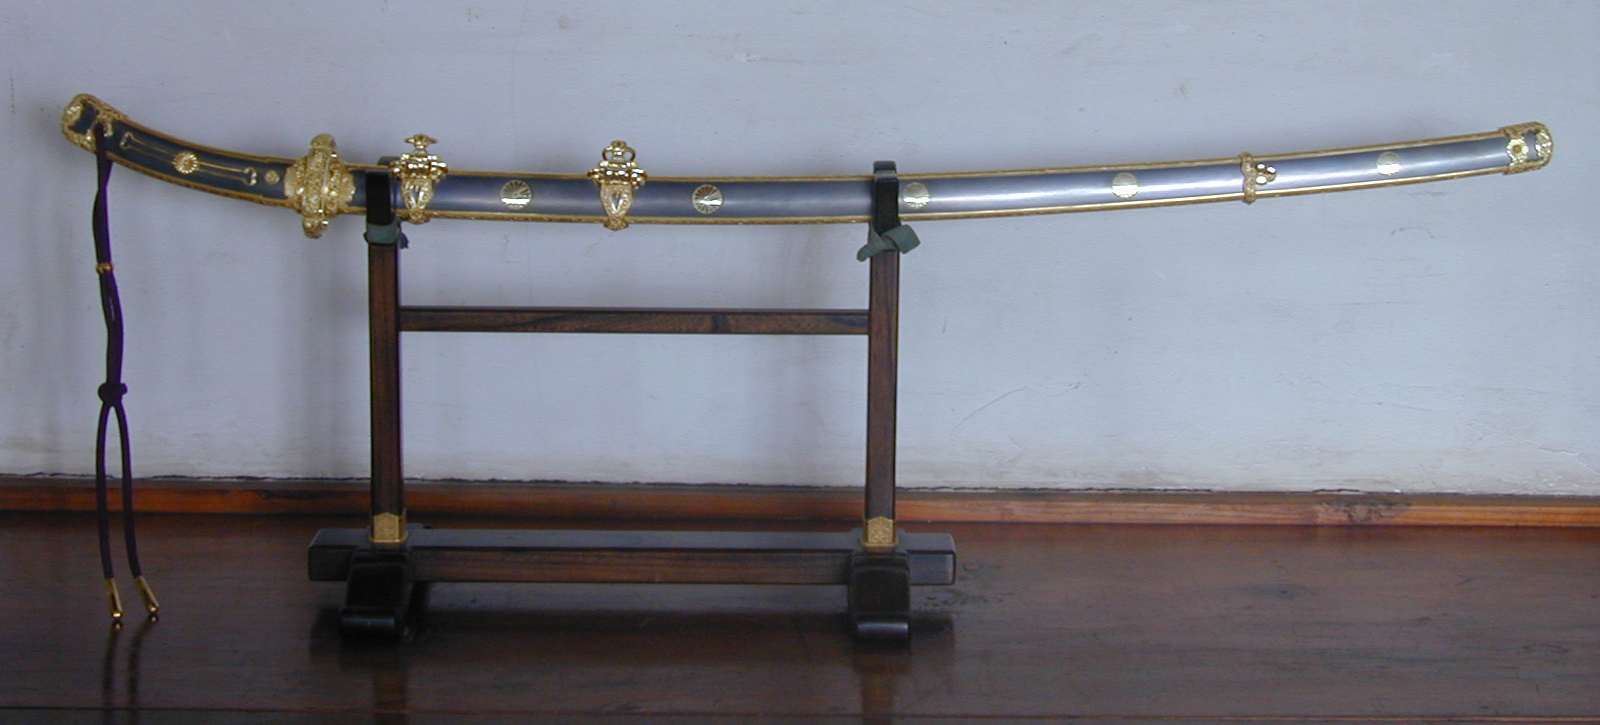 元帥刀 – 第一室刀剣 | 上野の博物館